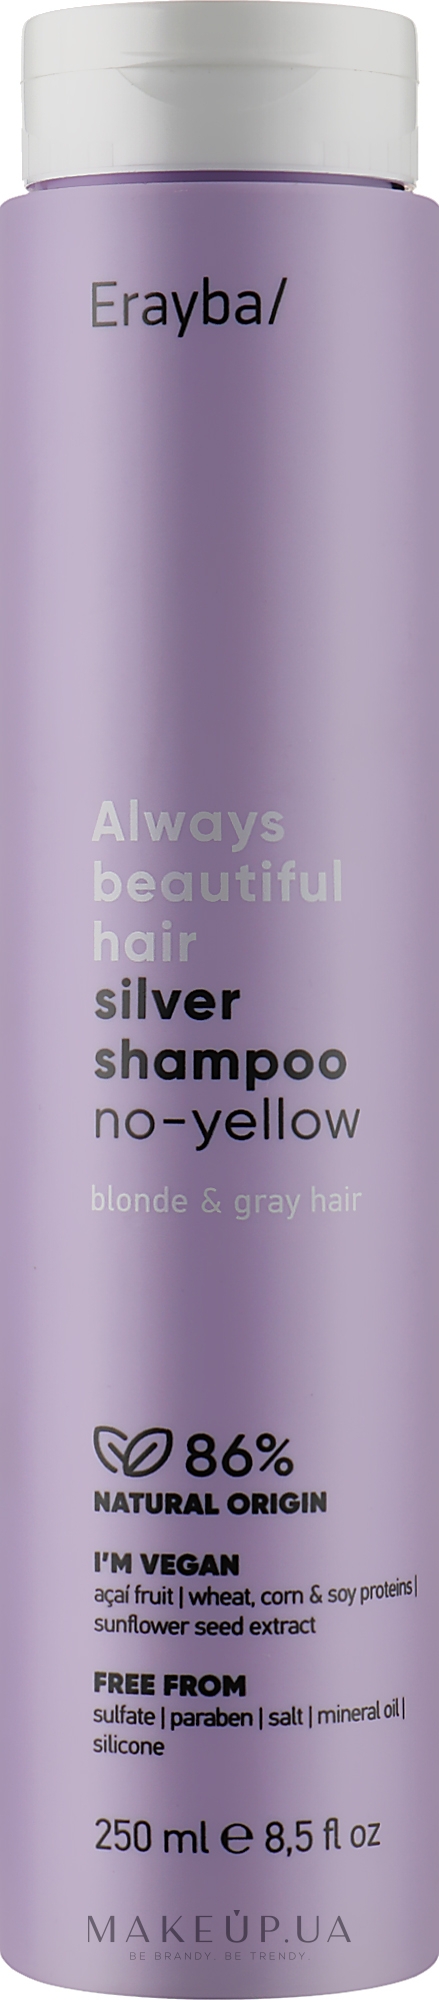 Шампунь антижовтий для сивого й освітленого волосся - Erayba ABH Silver No-Yellow Shampoo — фото 250ml